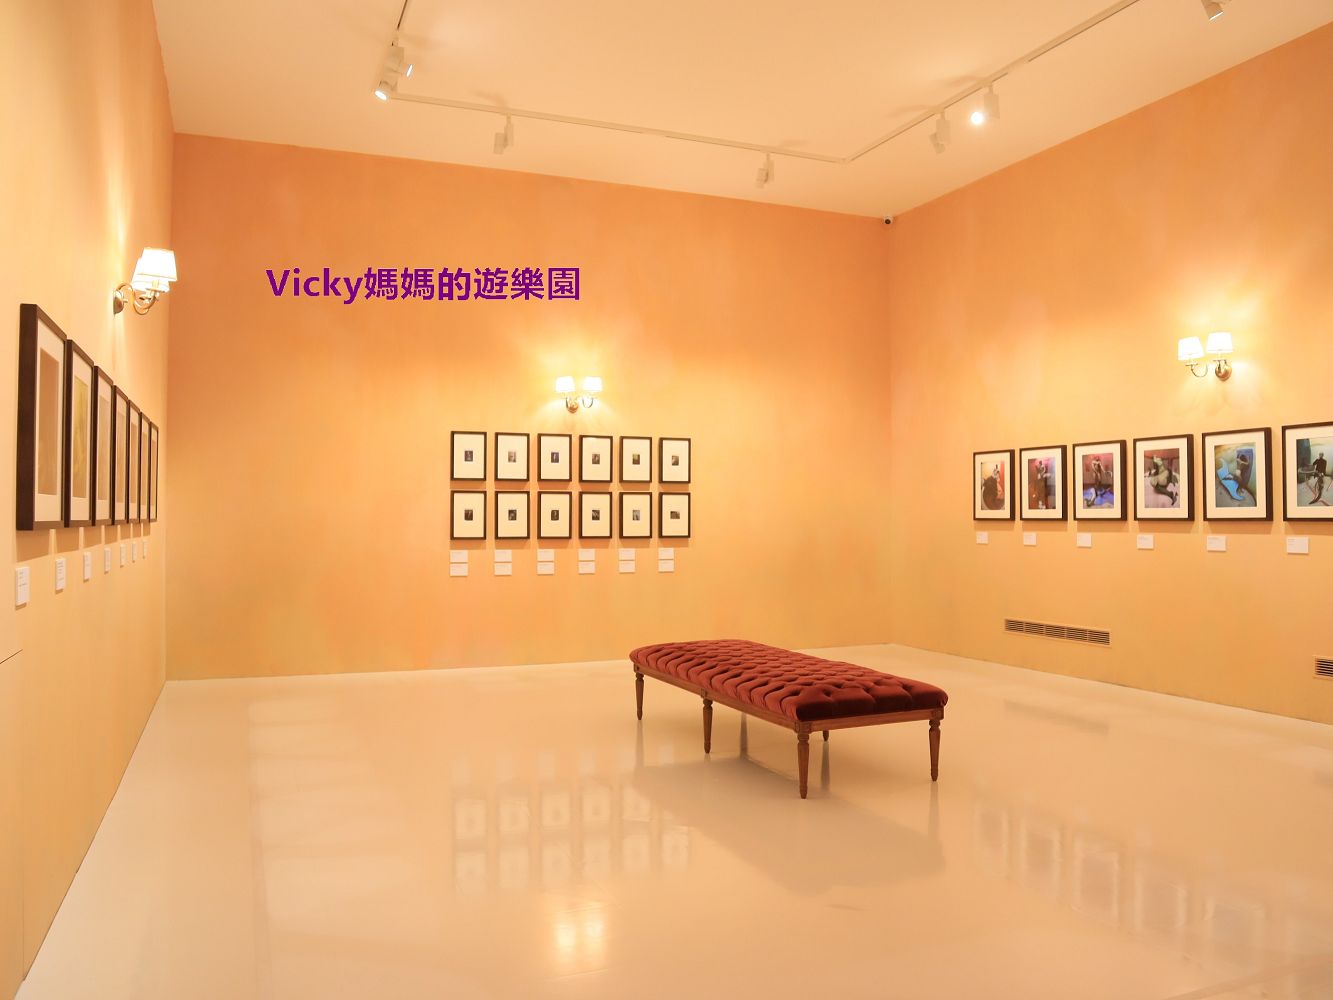 台南活動︱奇美博物館特展︱蒂姆・沃克：美妙事物，顛覆想像的攝影鬼才，天馬行空的攝影元素，真叫人賞心悅目